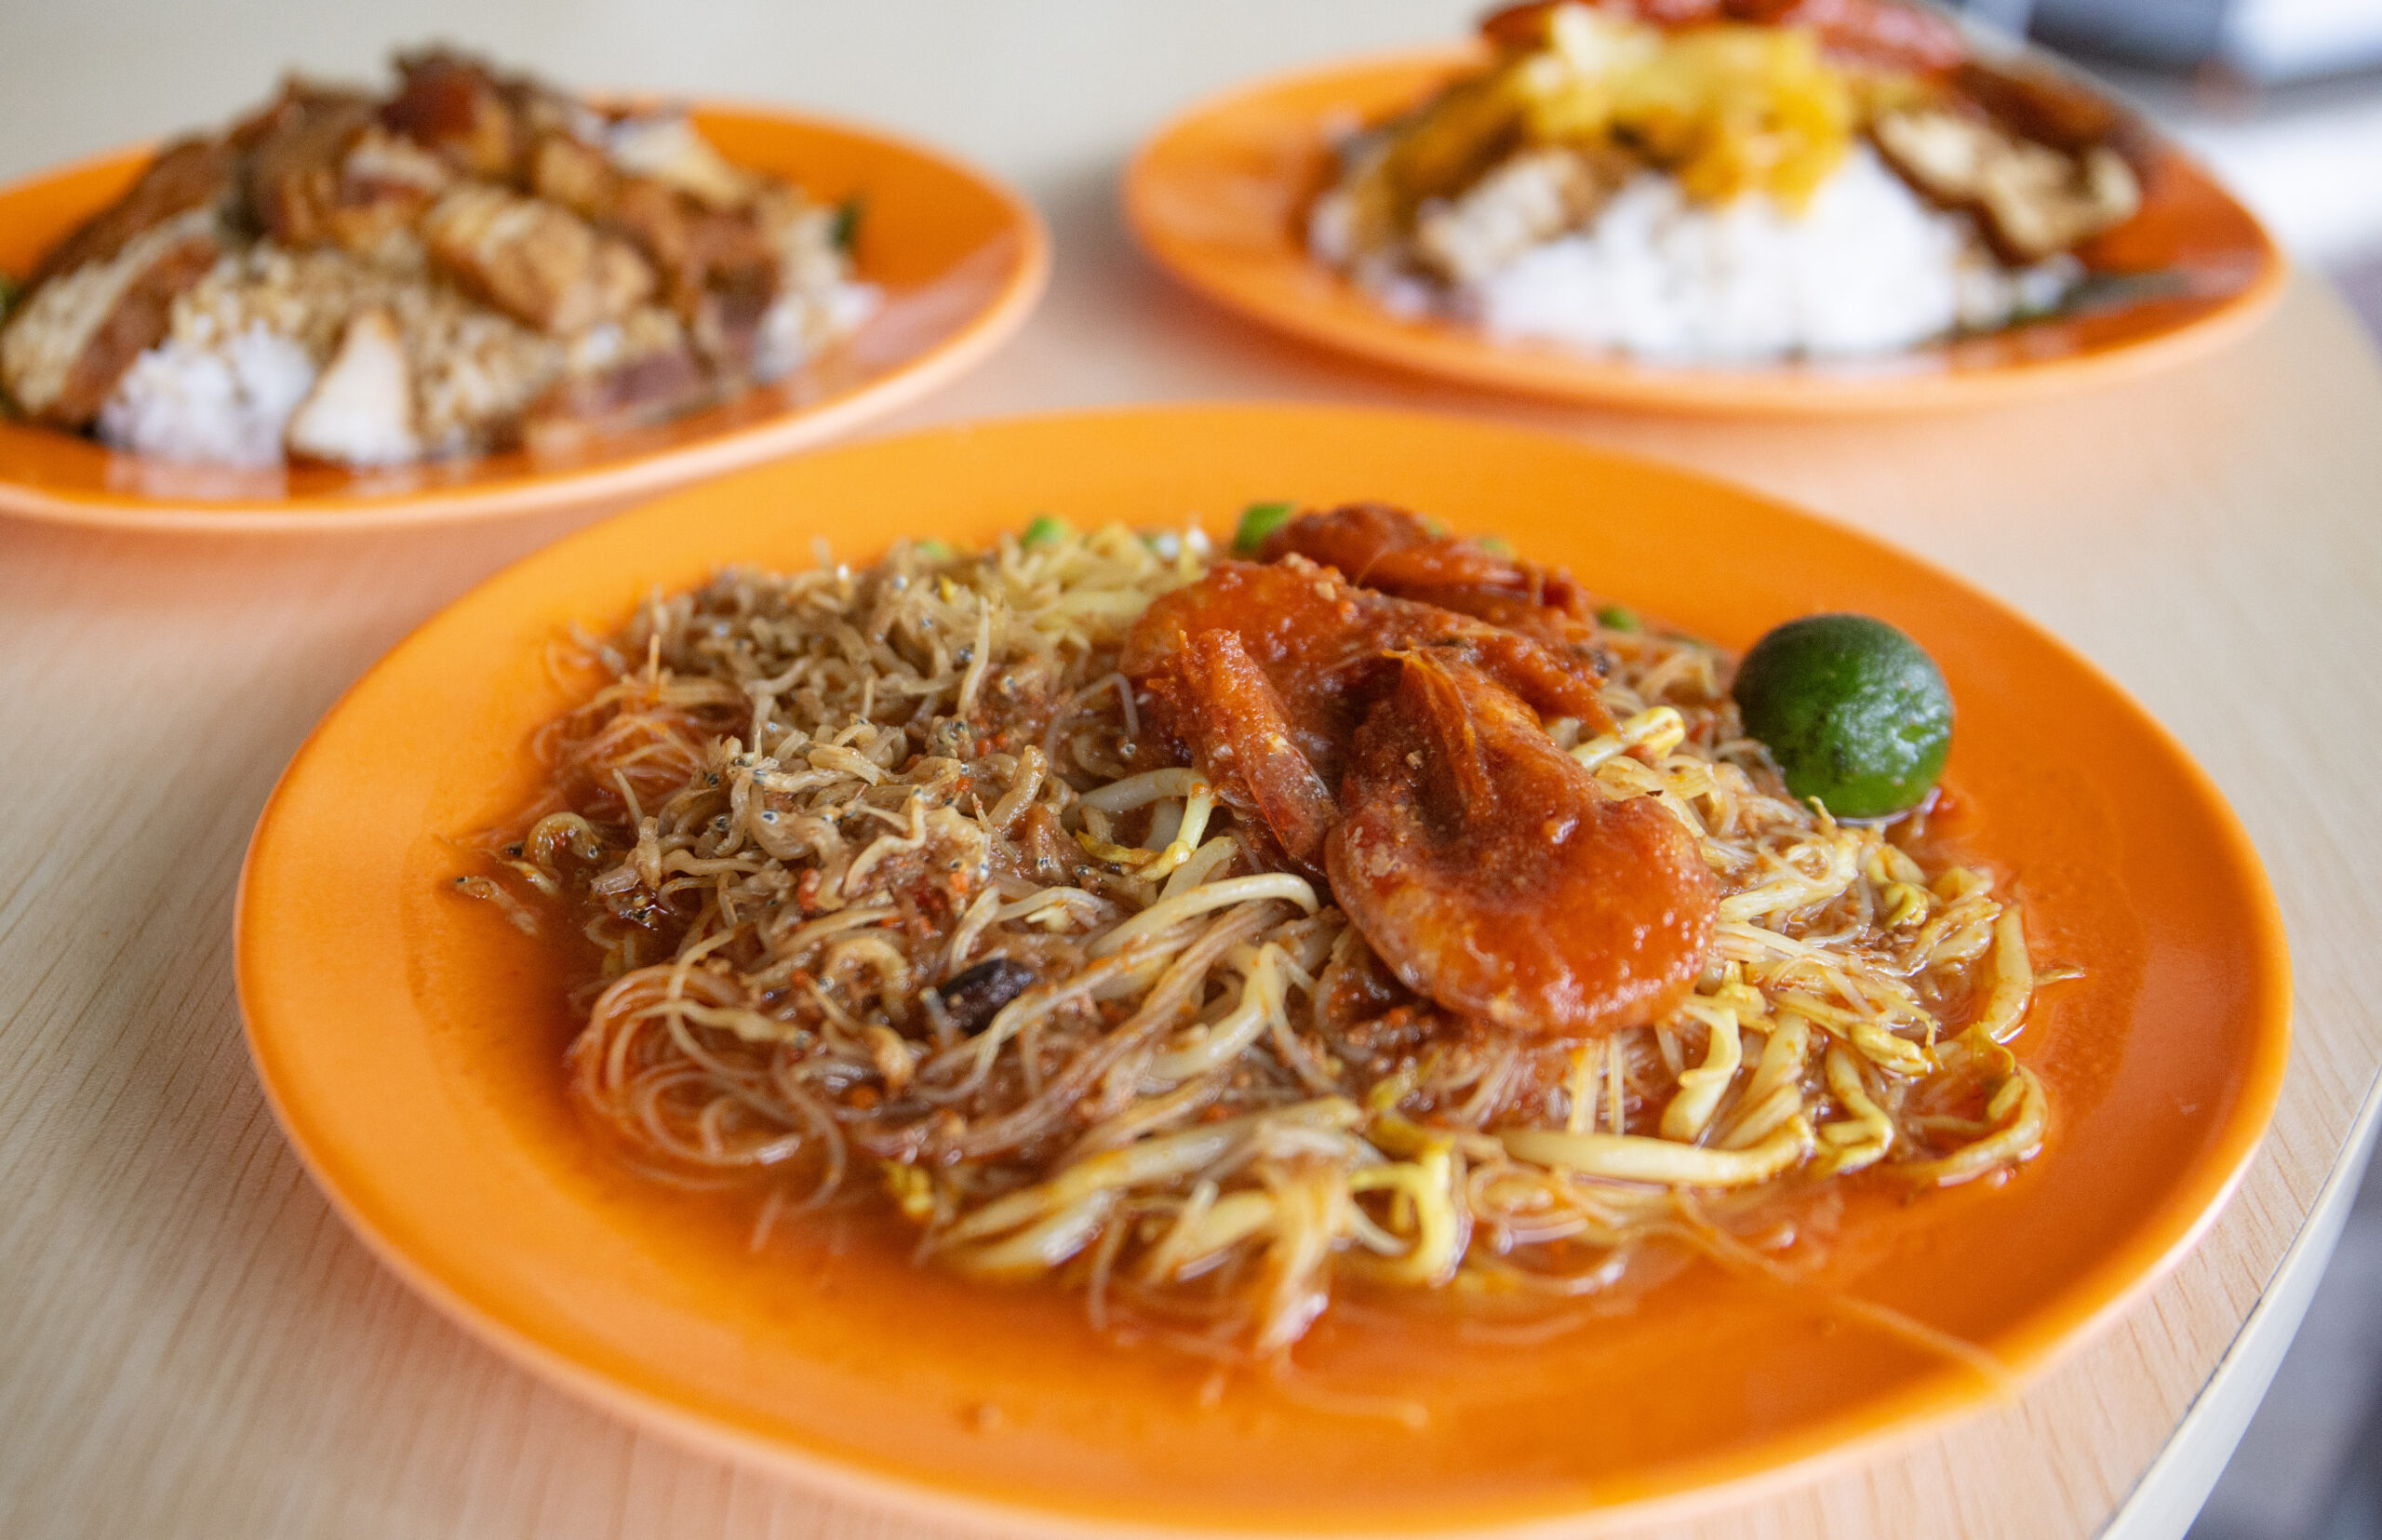 Batam food places - Mie Siam